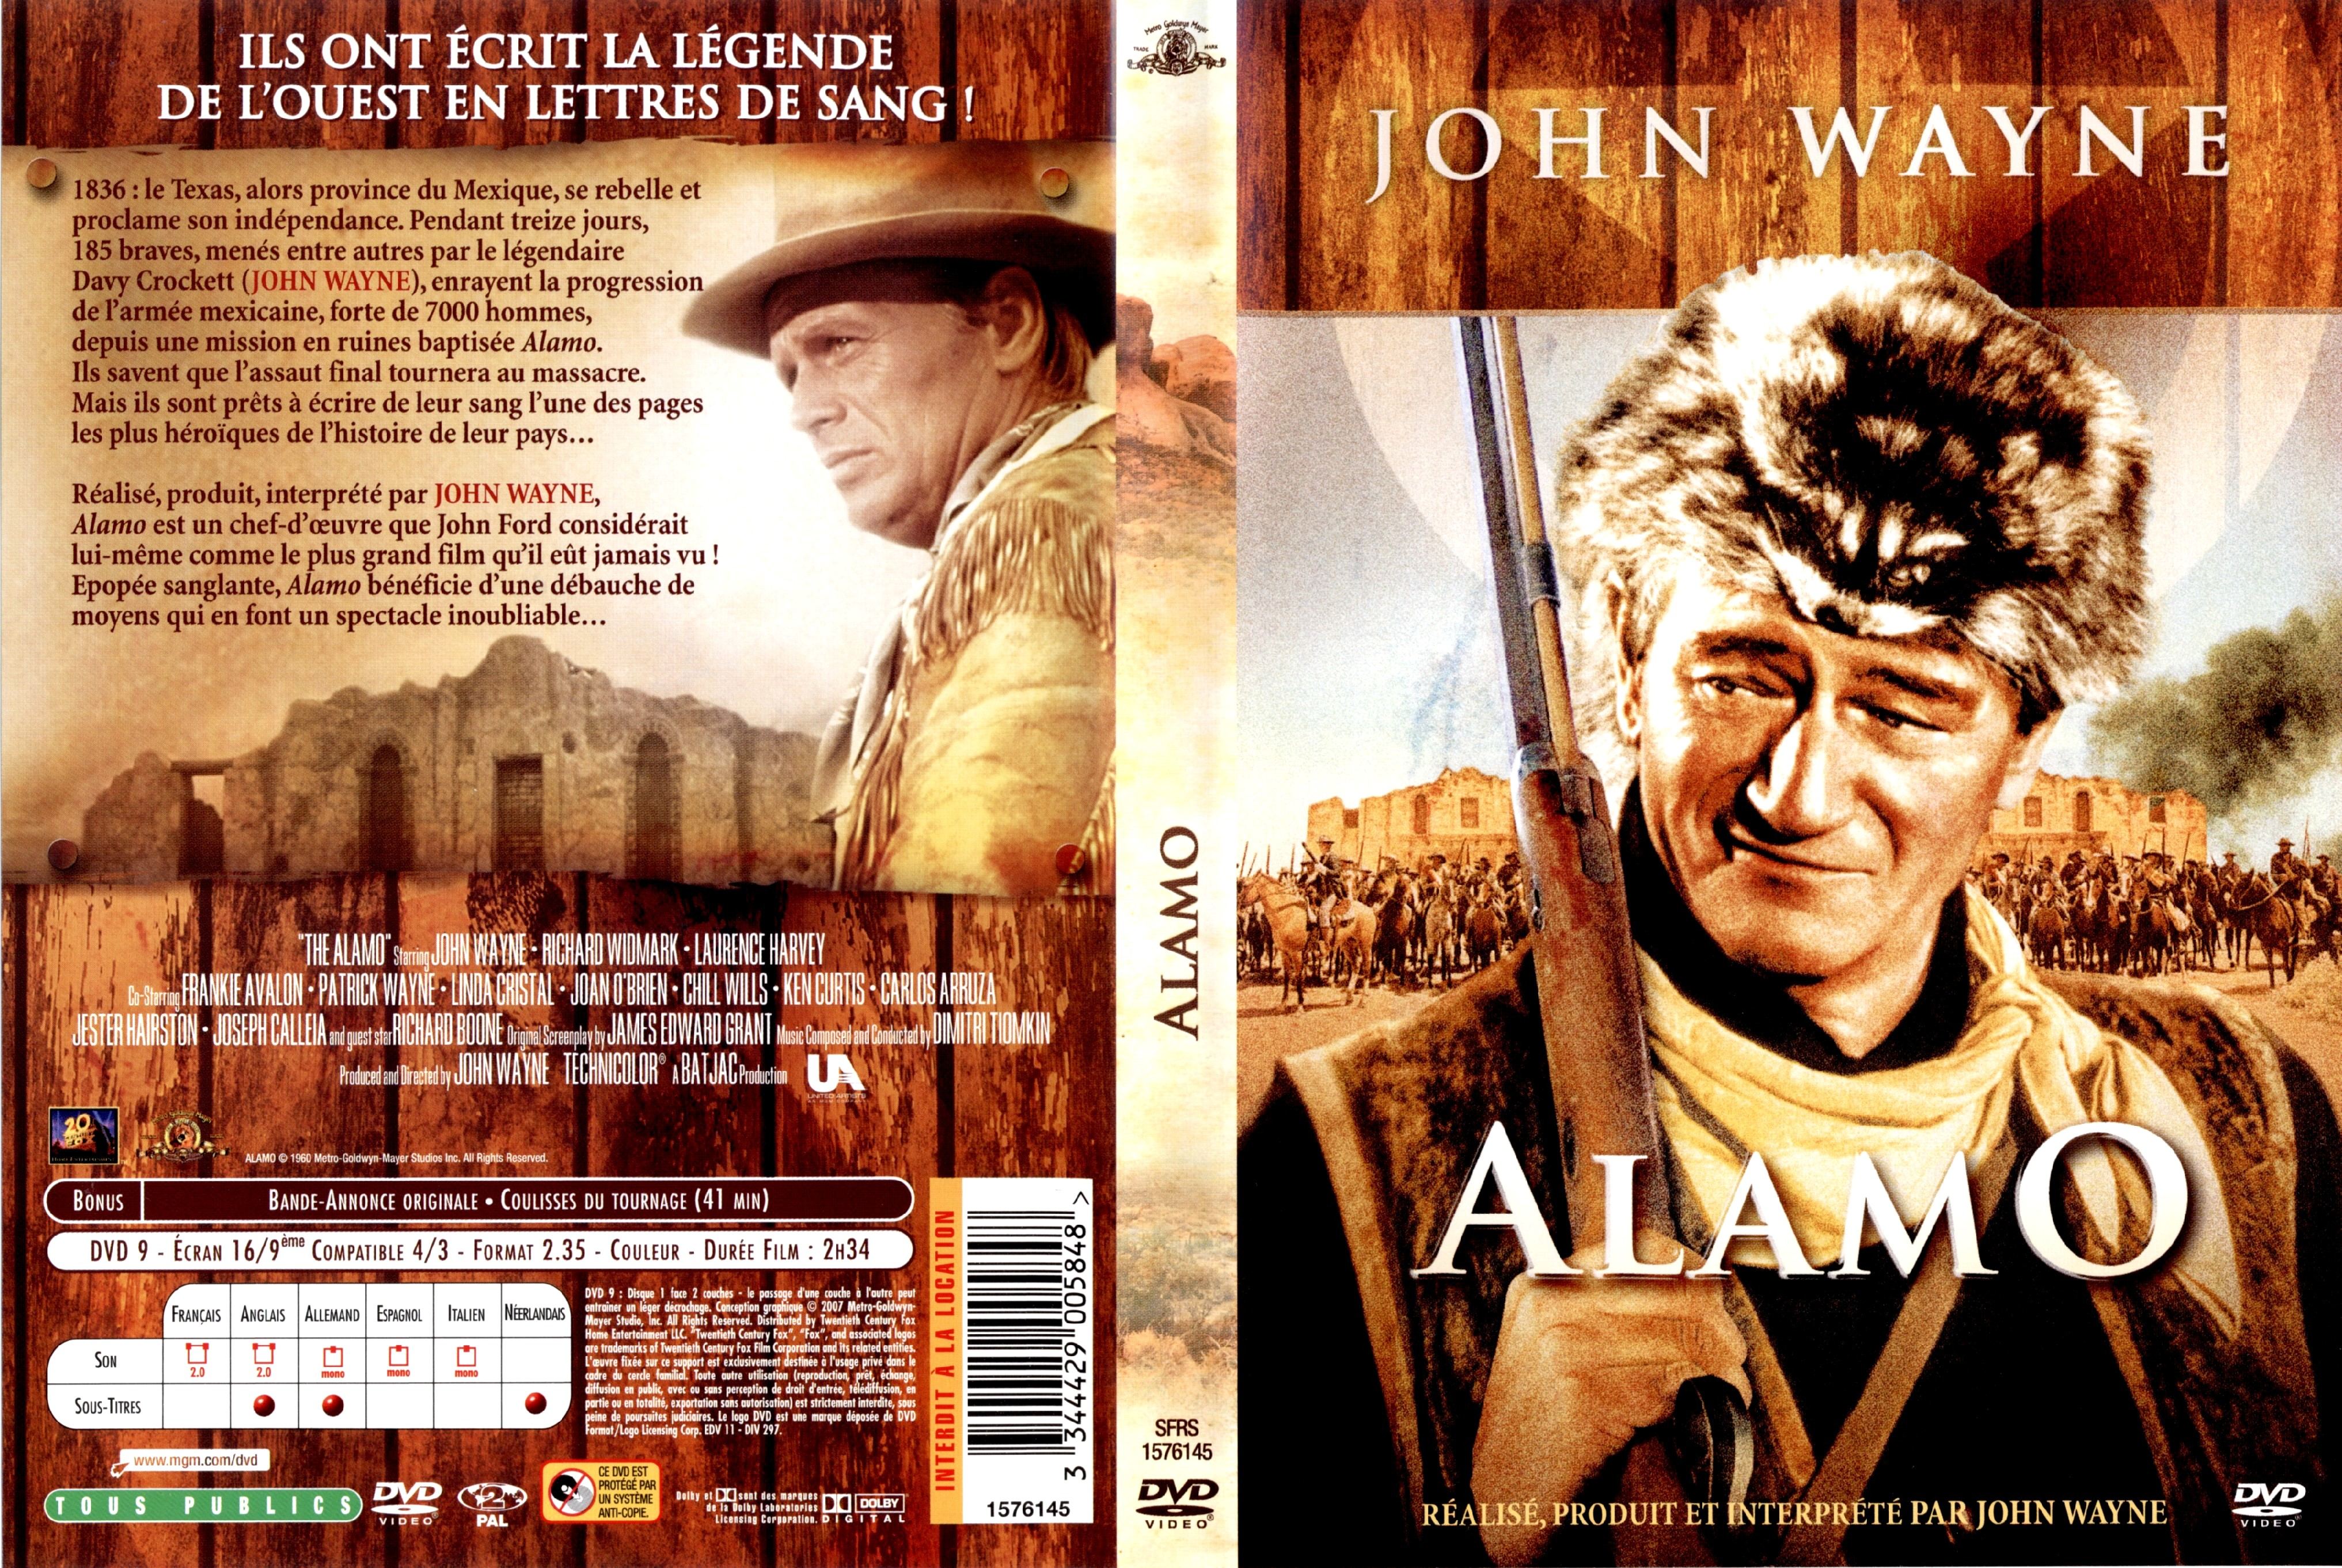 Jaquette DVD Alamo v4